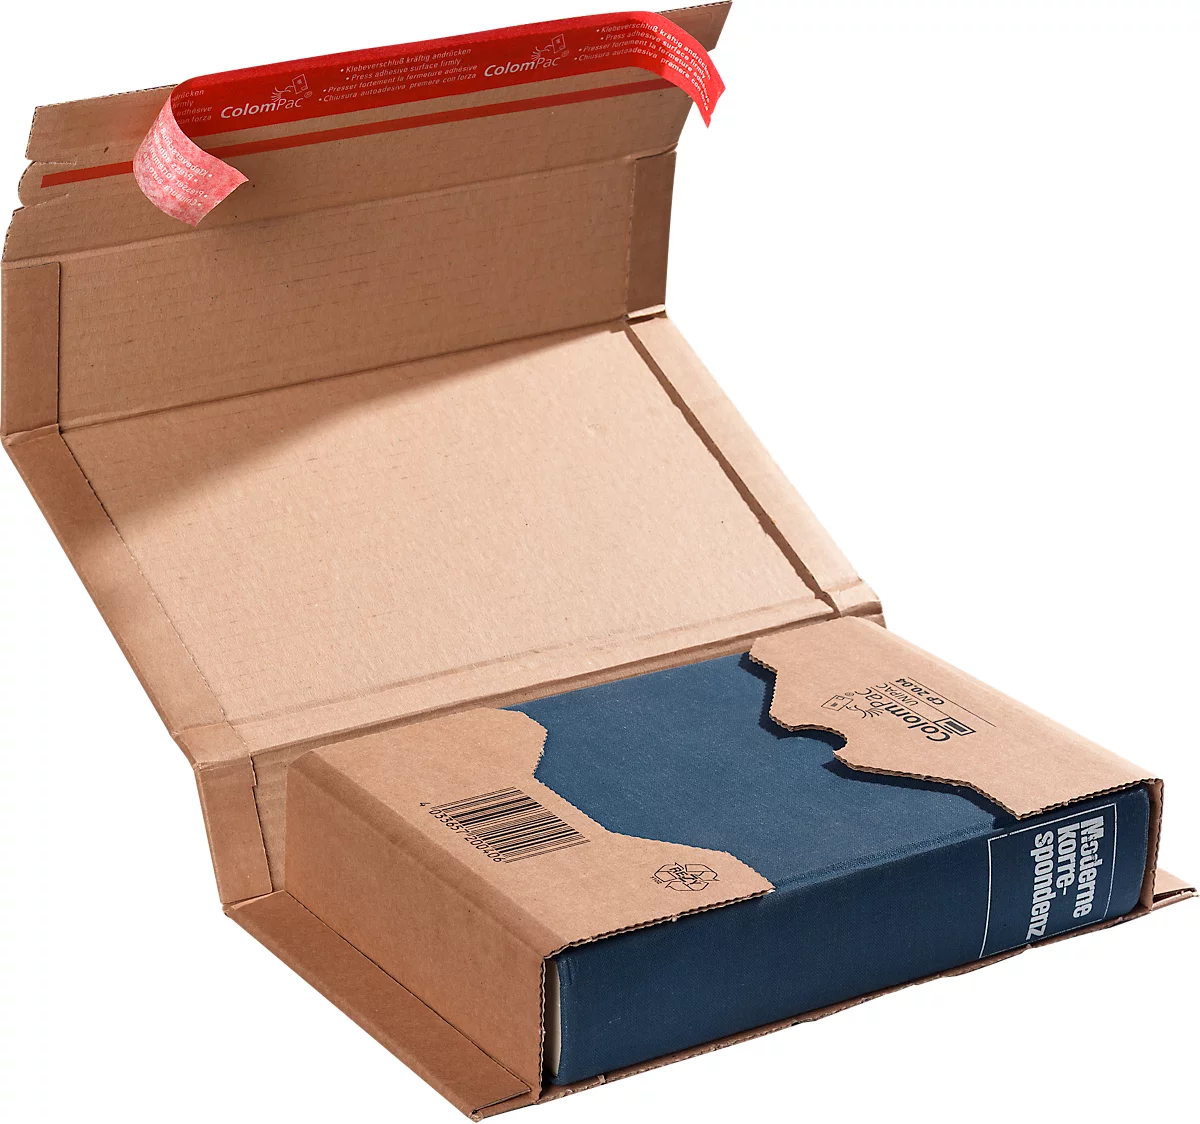 Embalaje envolvente ColomPac CP 020, con precinto autoadhesivo, cartón ondulado, marrón, anchura 299 x profundidad 175 x altura 80 mm (A5+), 20 piezas